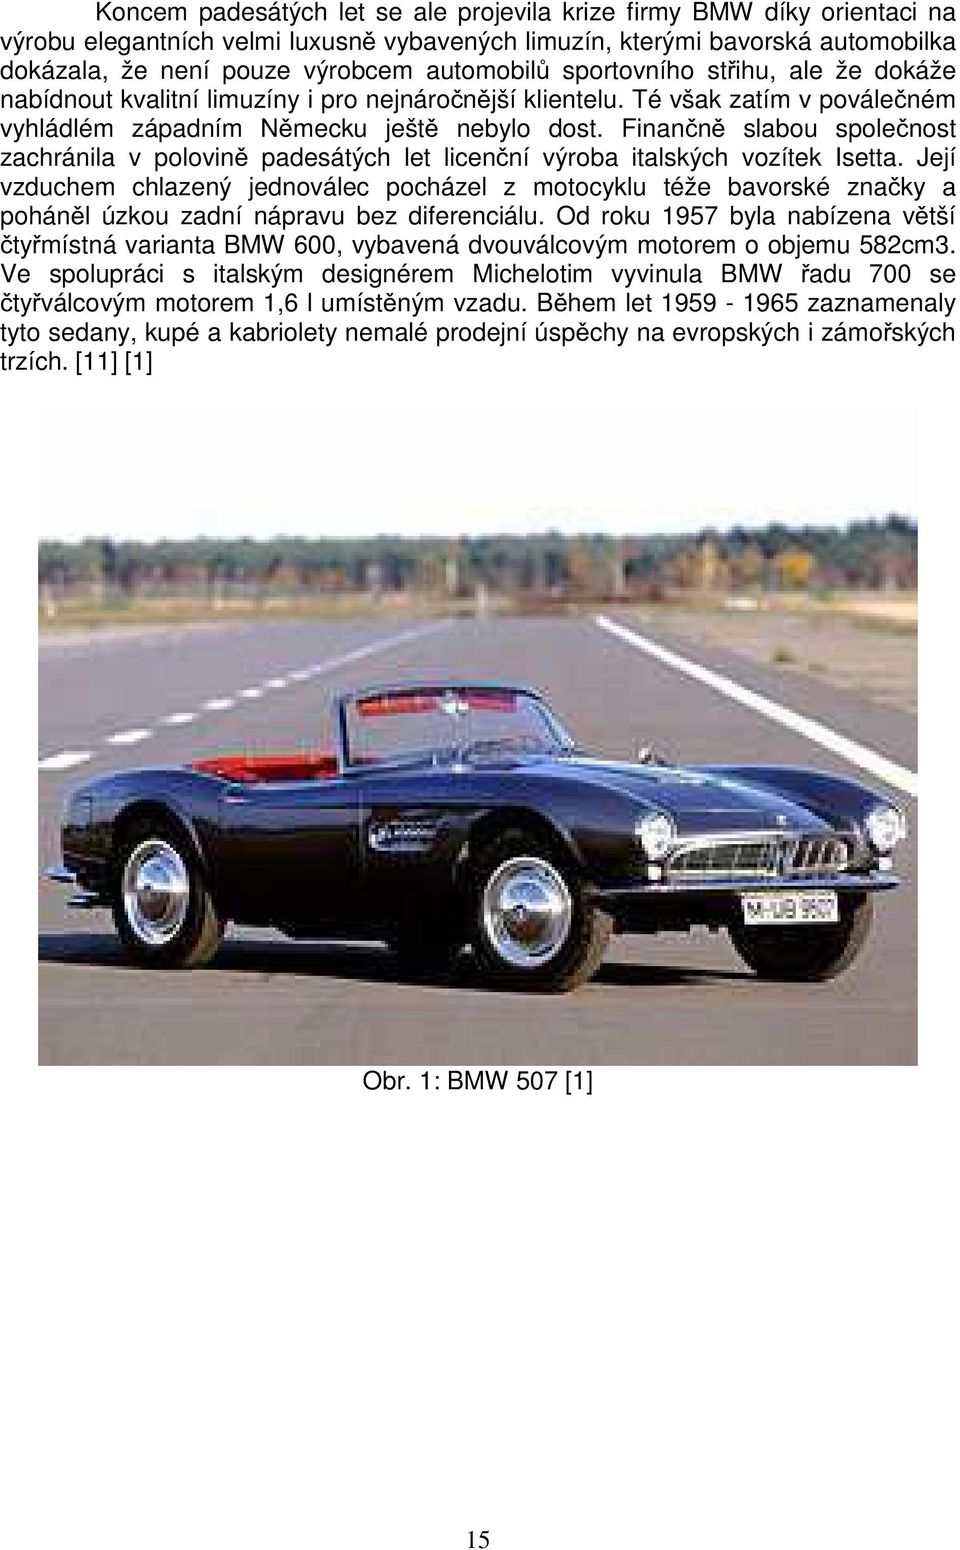 Finančně slabou společnost zachránila v polovině padesátých let licenční výroba italských vozítek Isetta.